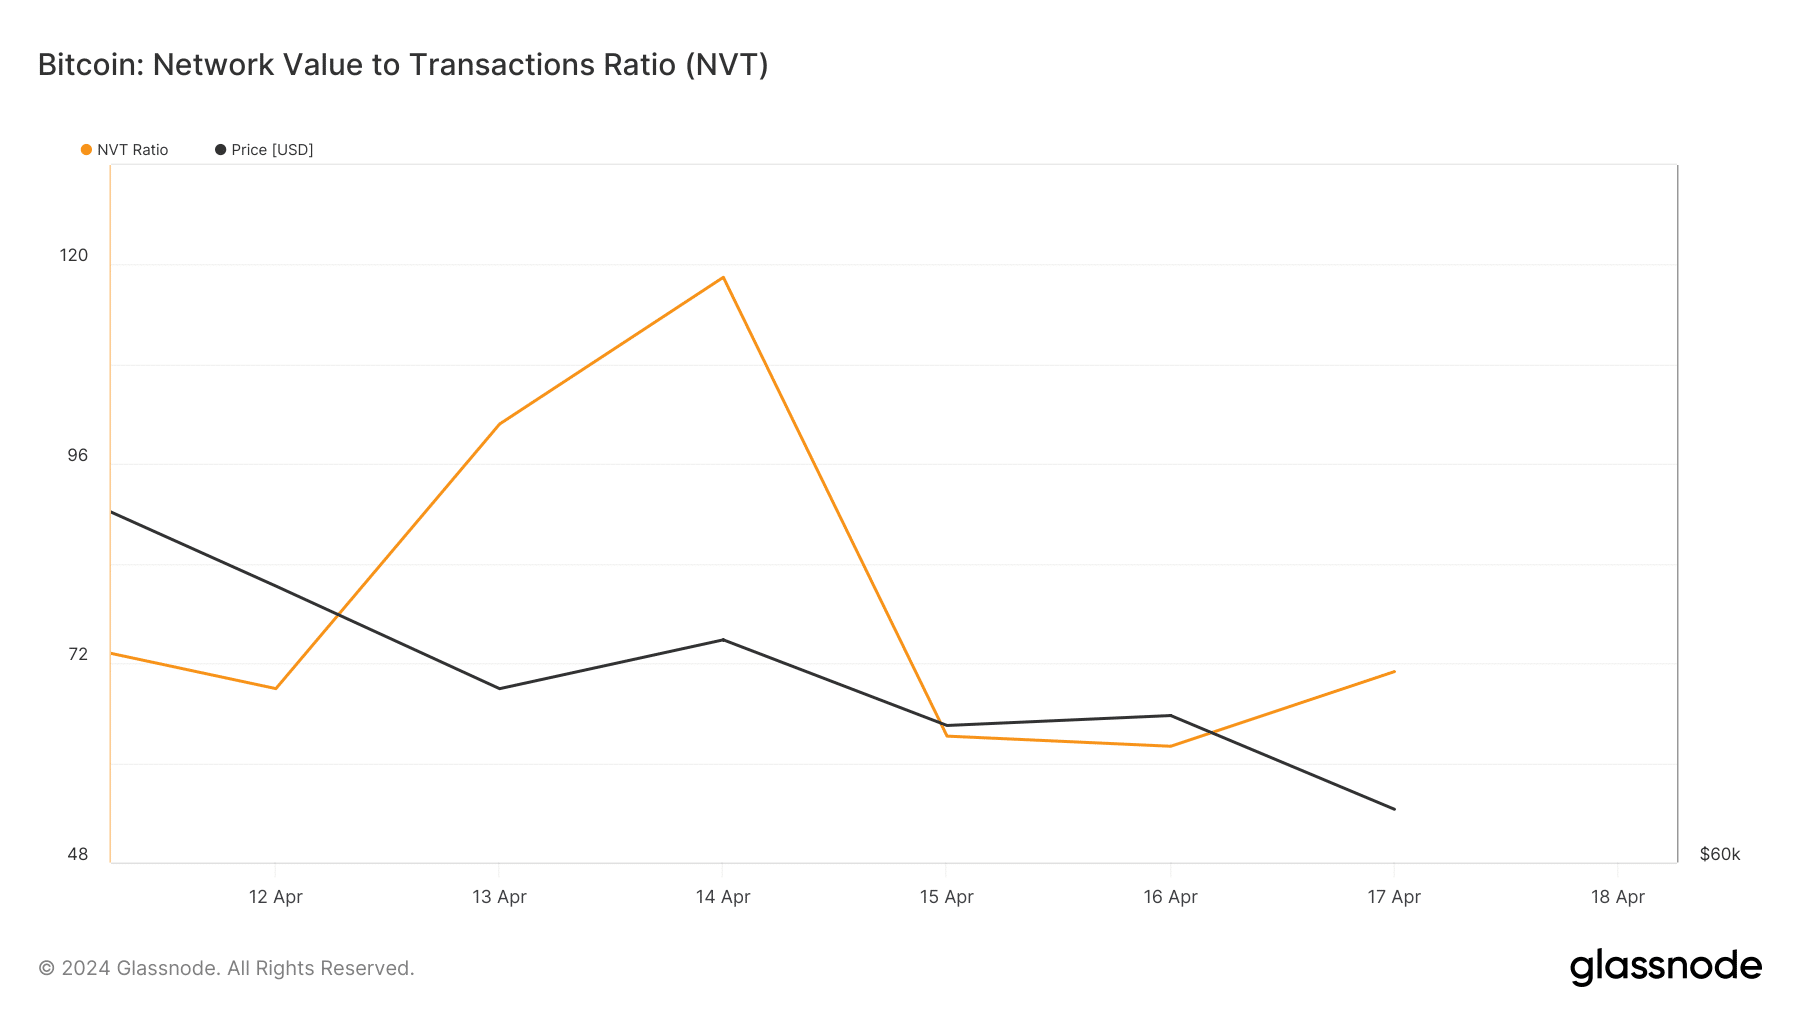 El ratio NVT de Bitcoin ha aumentado